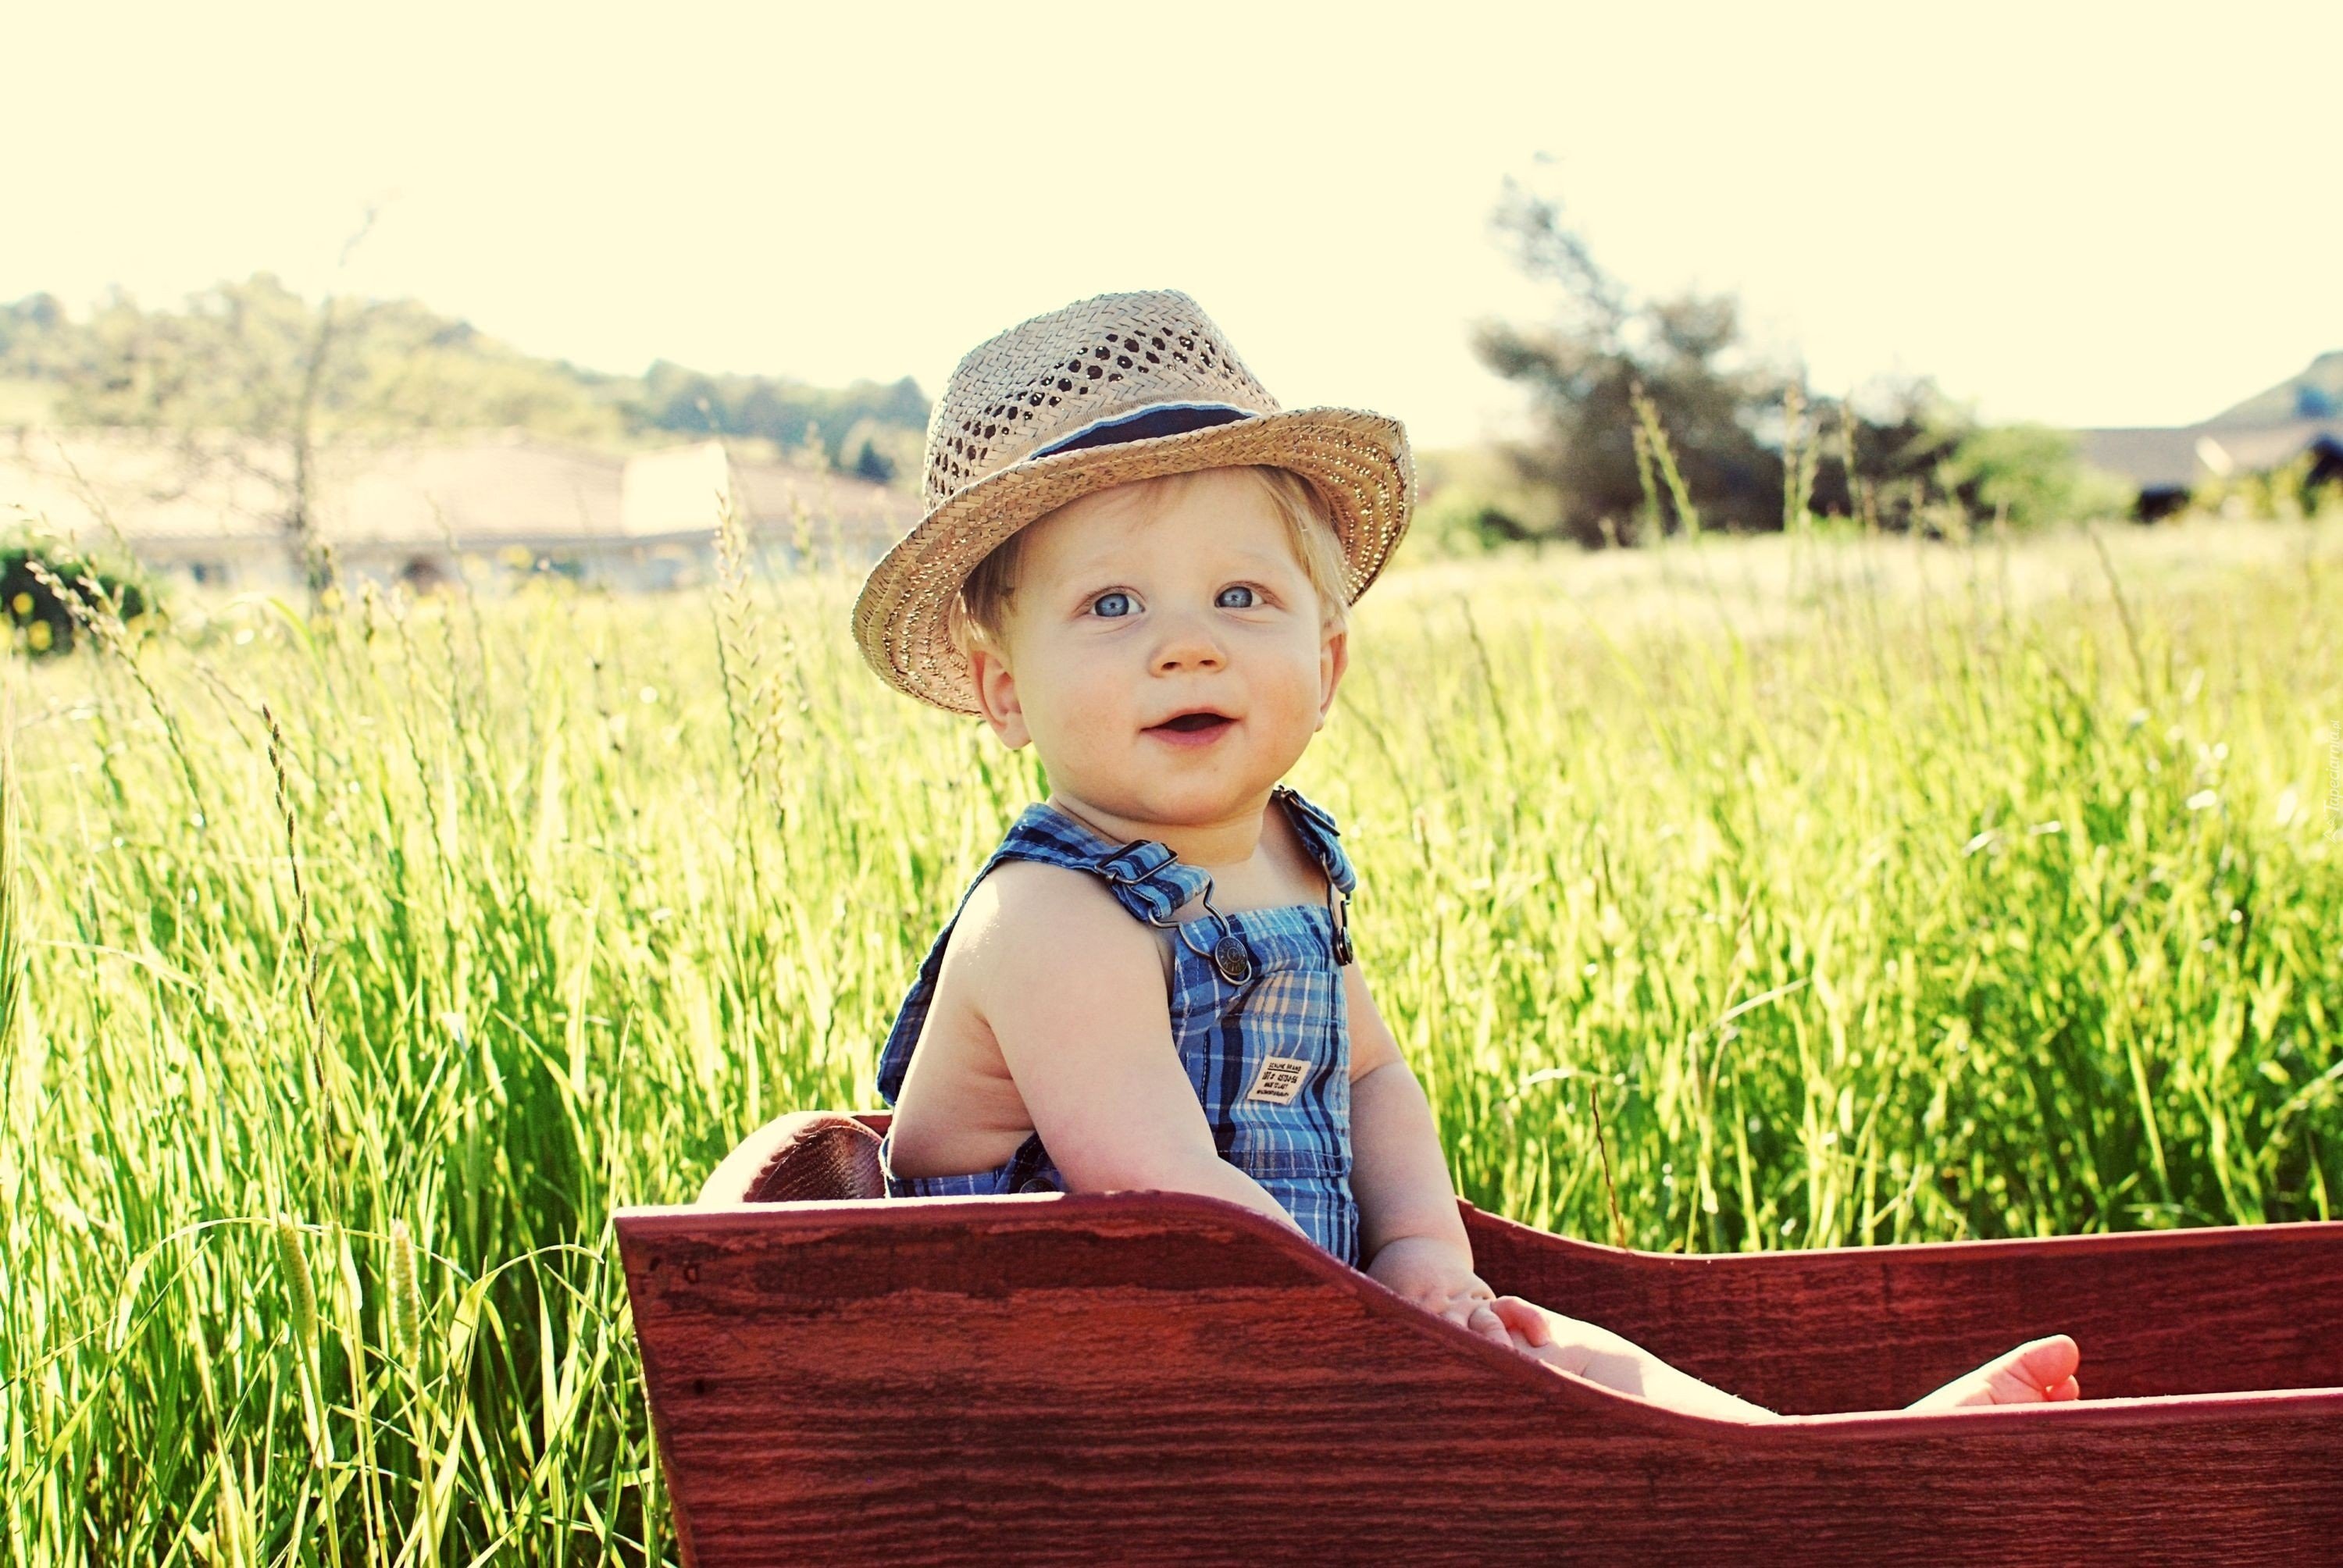 Детские фотки. Шляпа для детей. Ребенок мальчик. Малыш в шляпе. Фотосессия мальчика на природе.